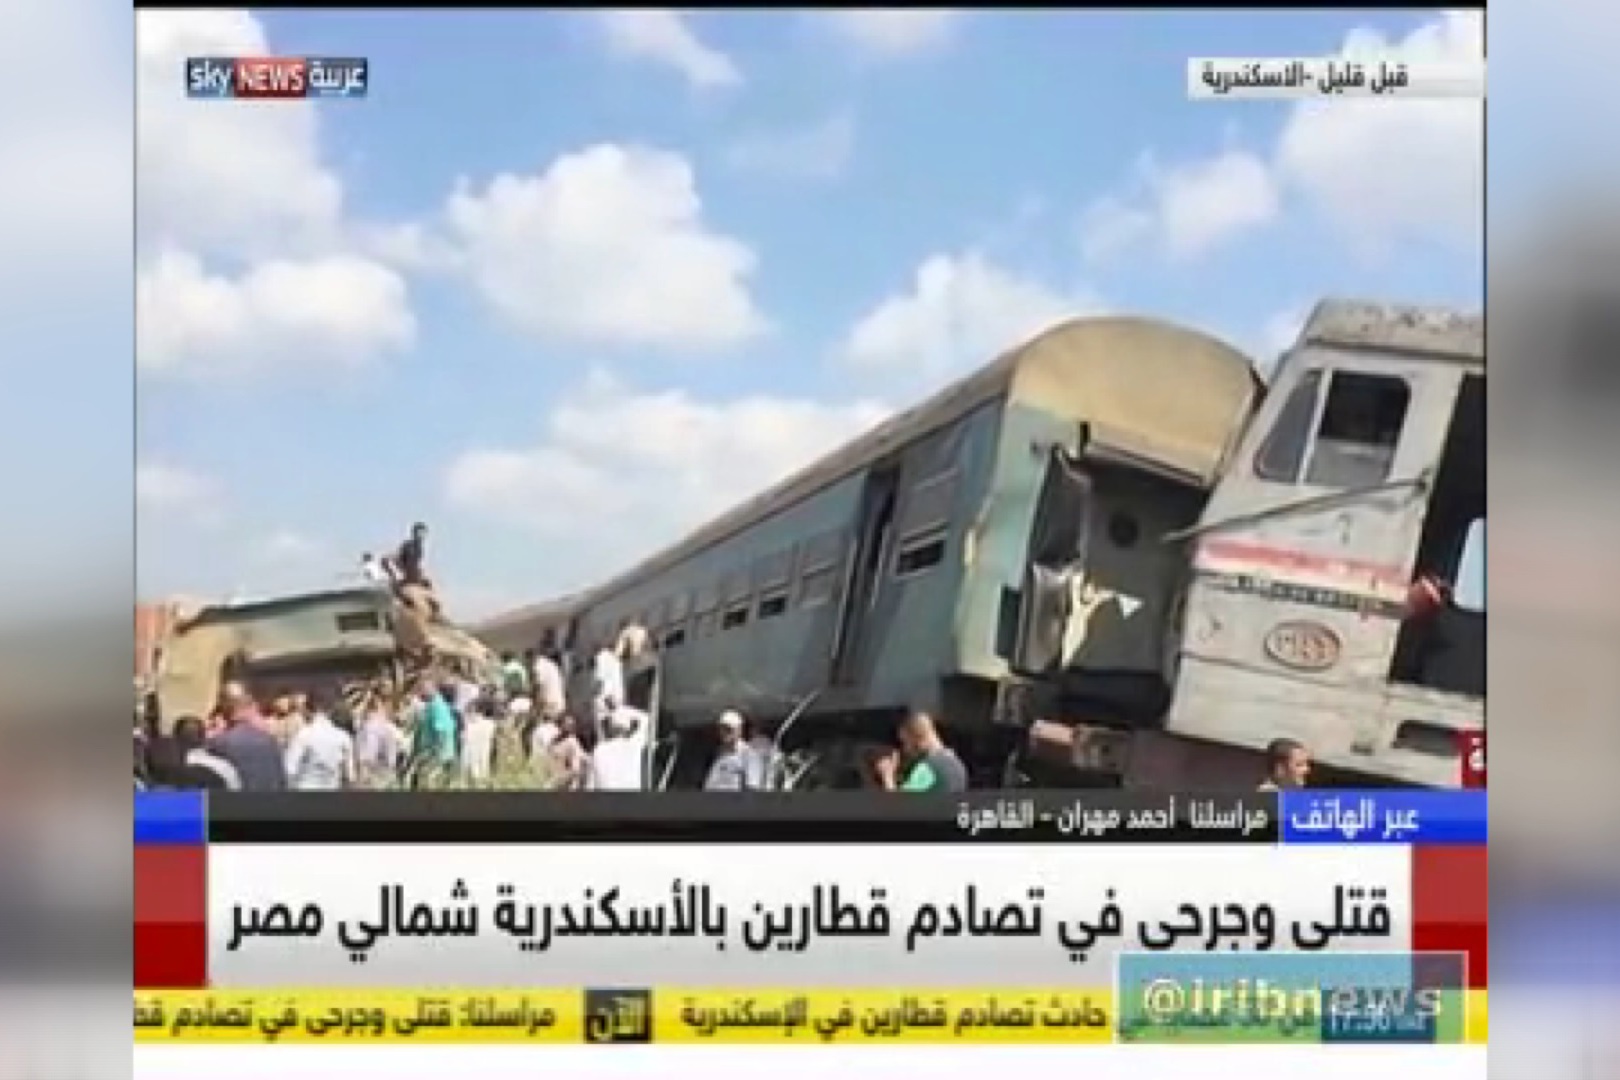 فیلم | برخورد شدید دو قطار در شهر اسکندریه مصر